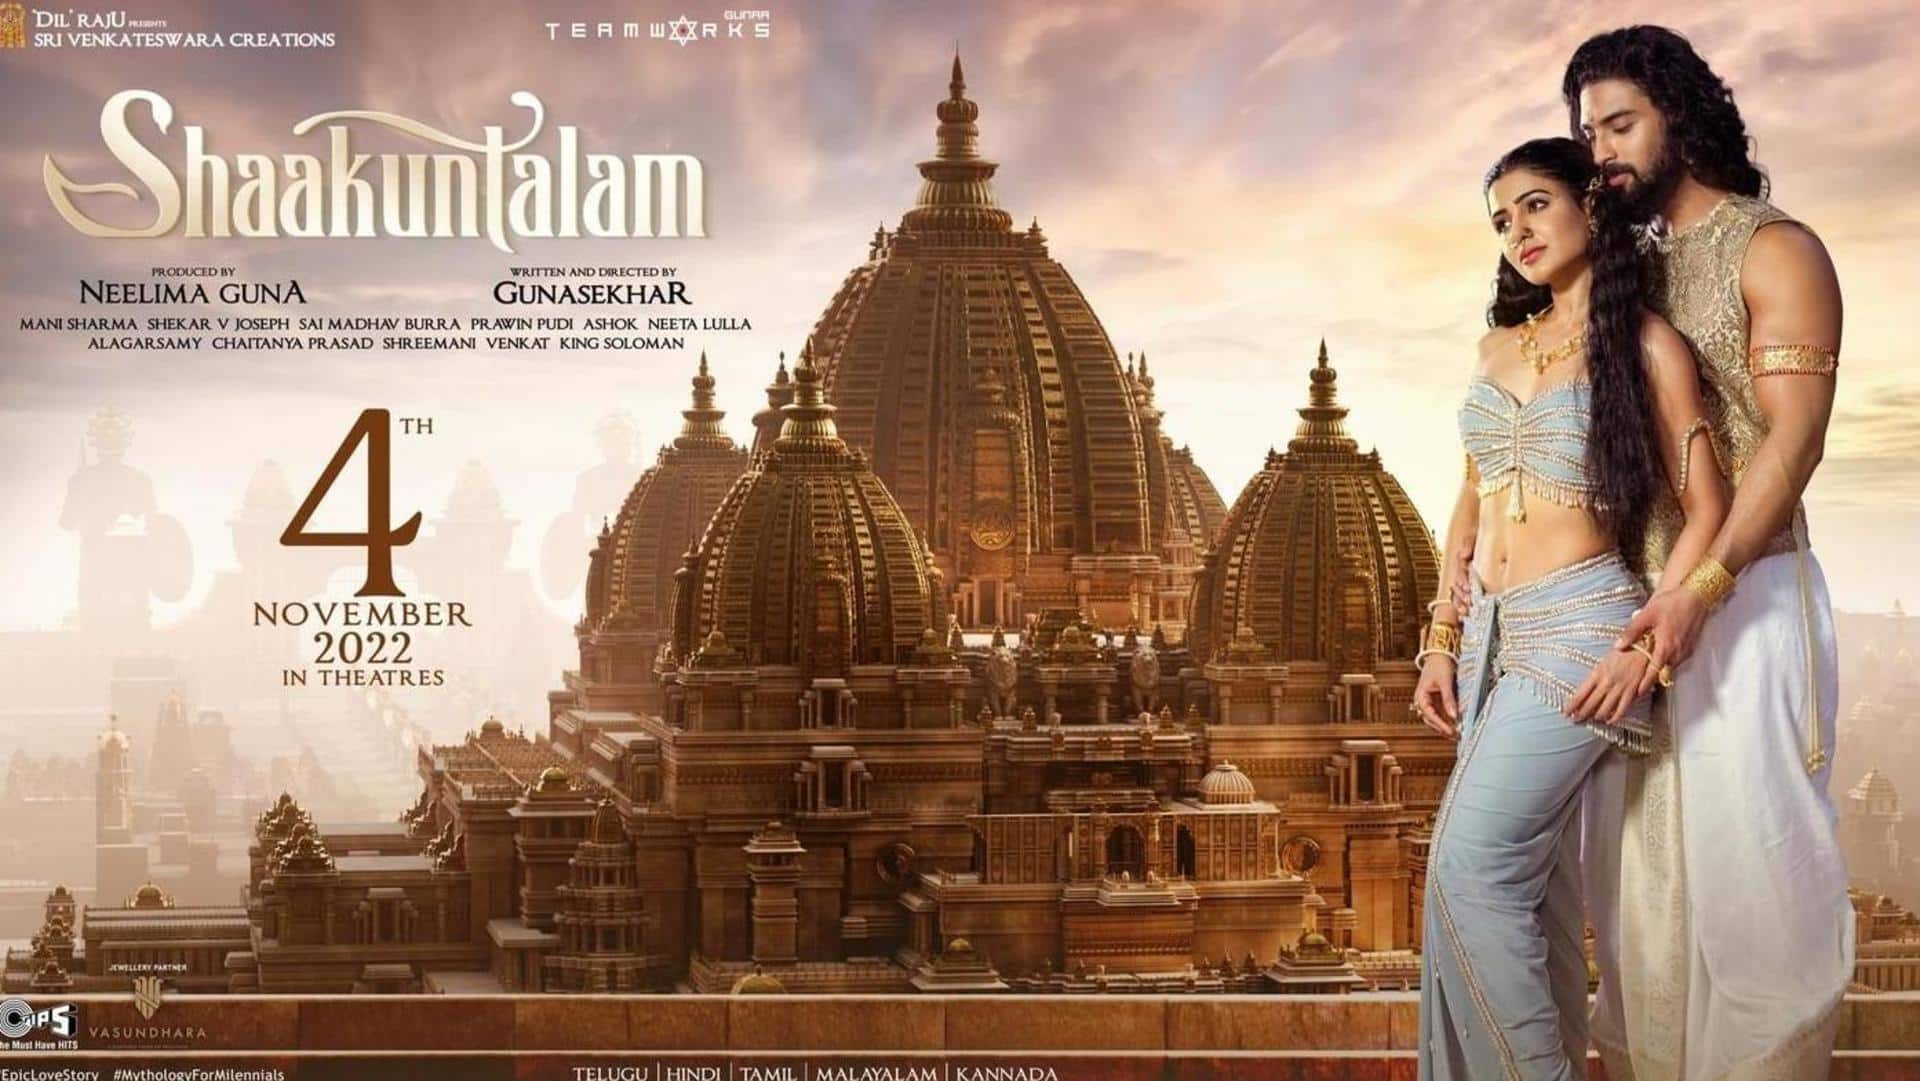 'Shaakuntalam' box office prediction: Samantha's film may struggle